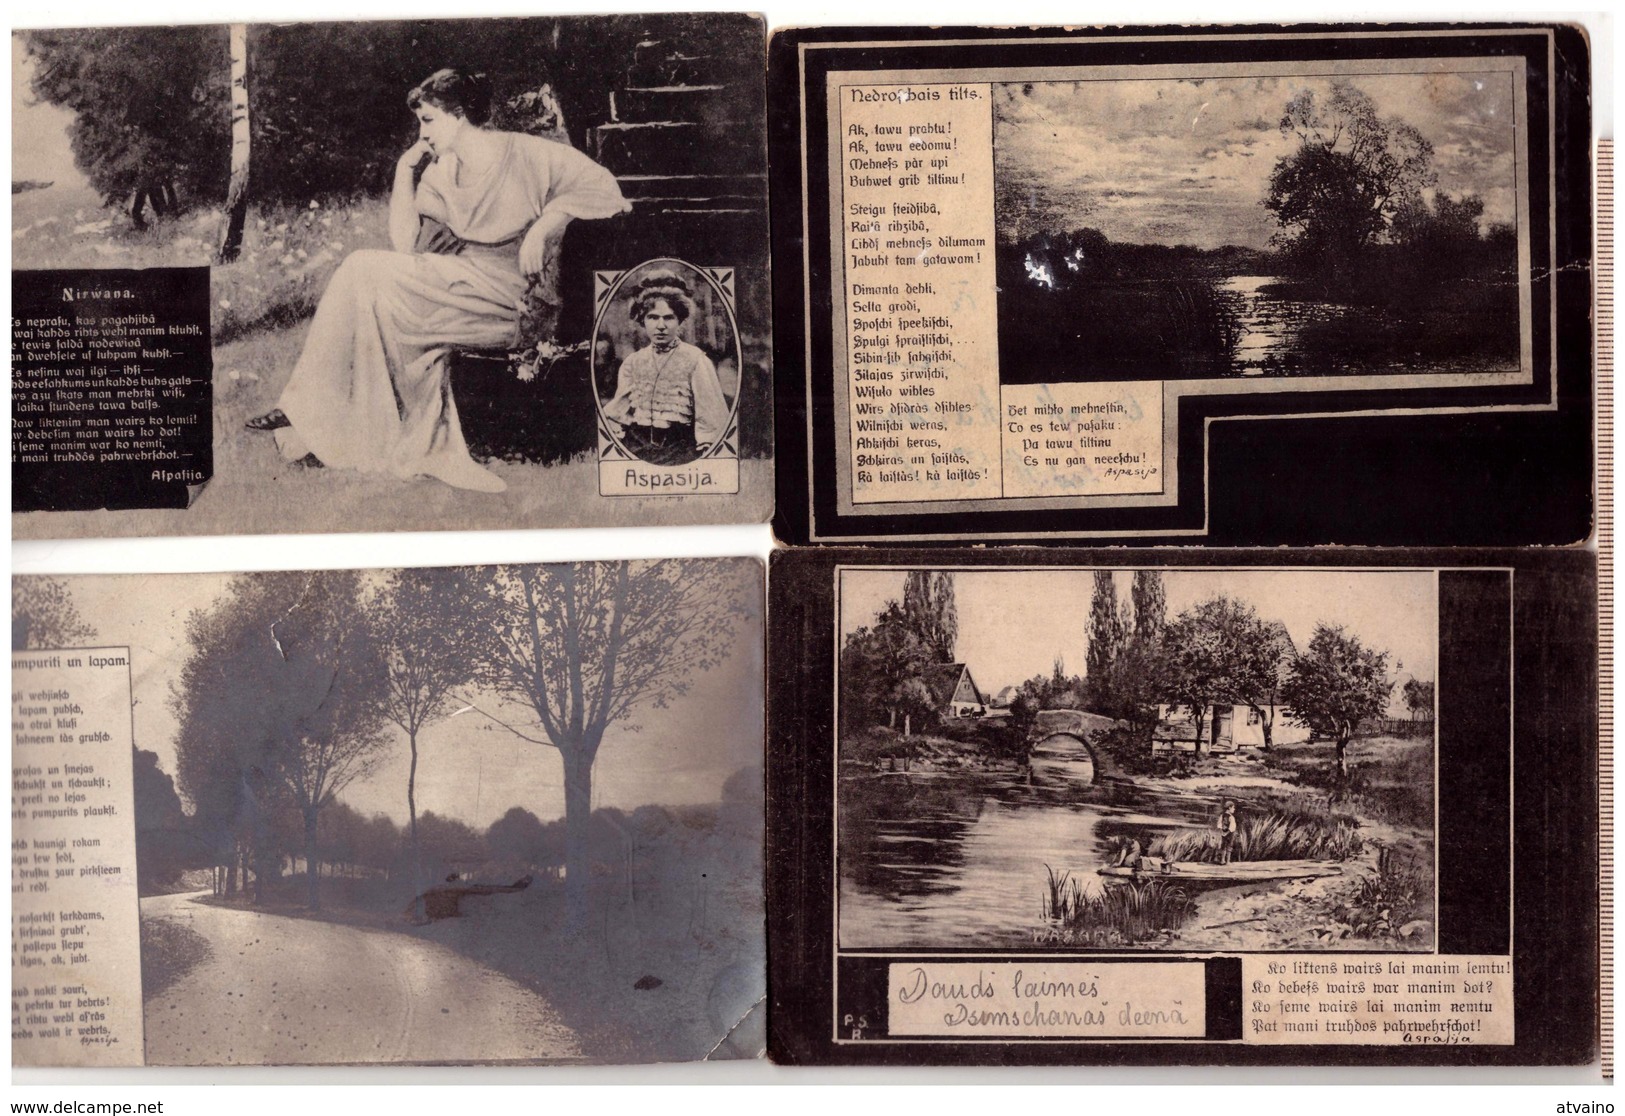 LATVIA LETTLAND ASPAZIJA DZEJA X 4 GREETING CARD VINTAGE PHOTO POSTCARD 1910-1921 - Latvia